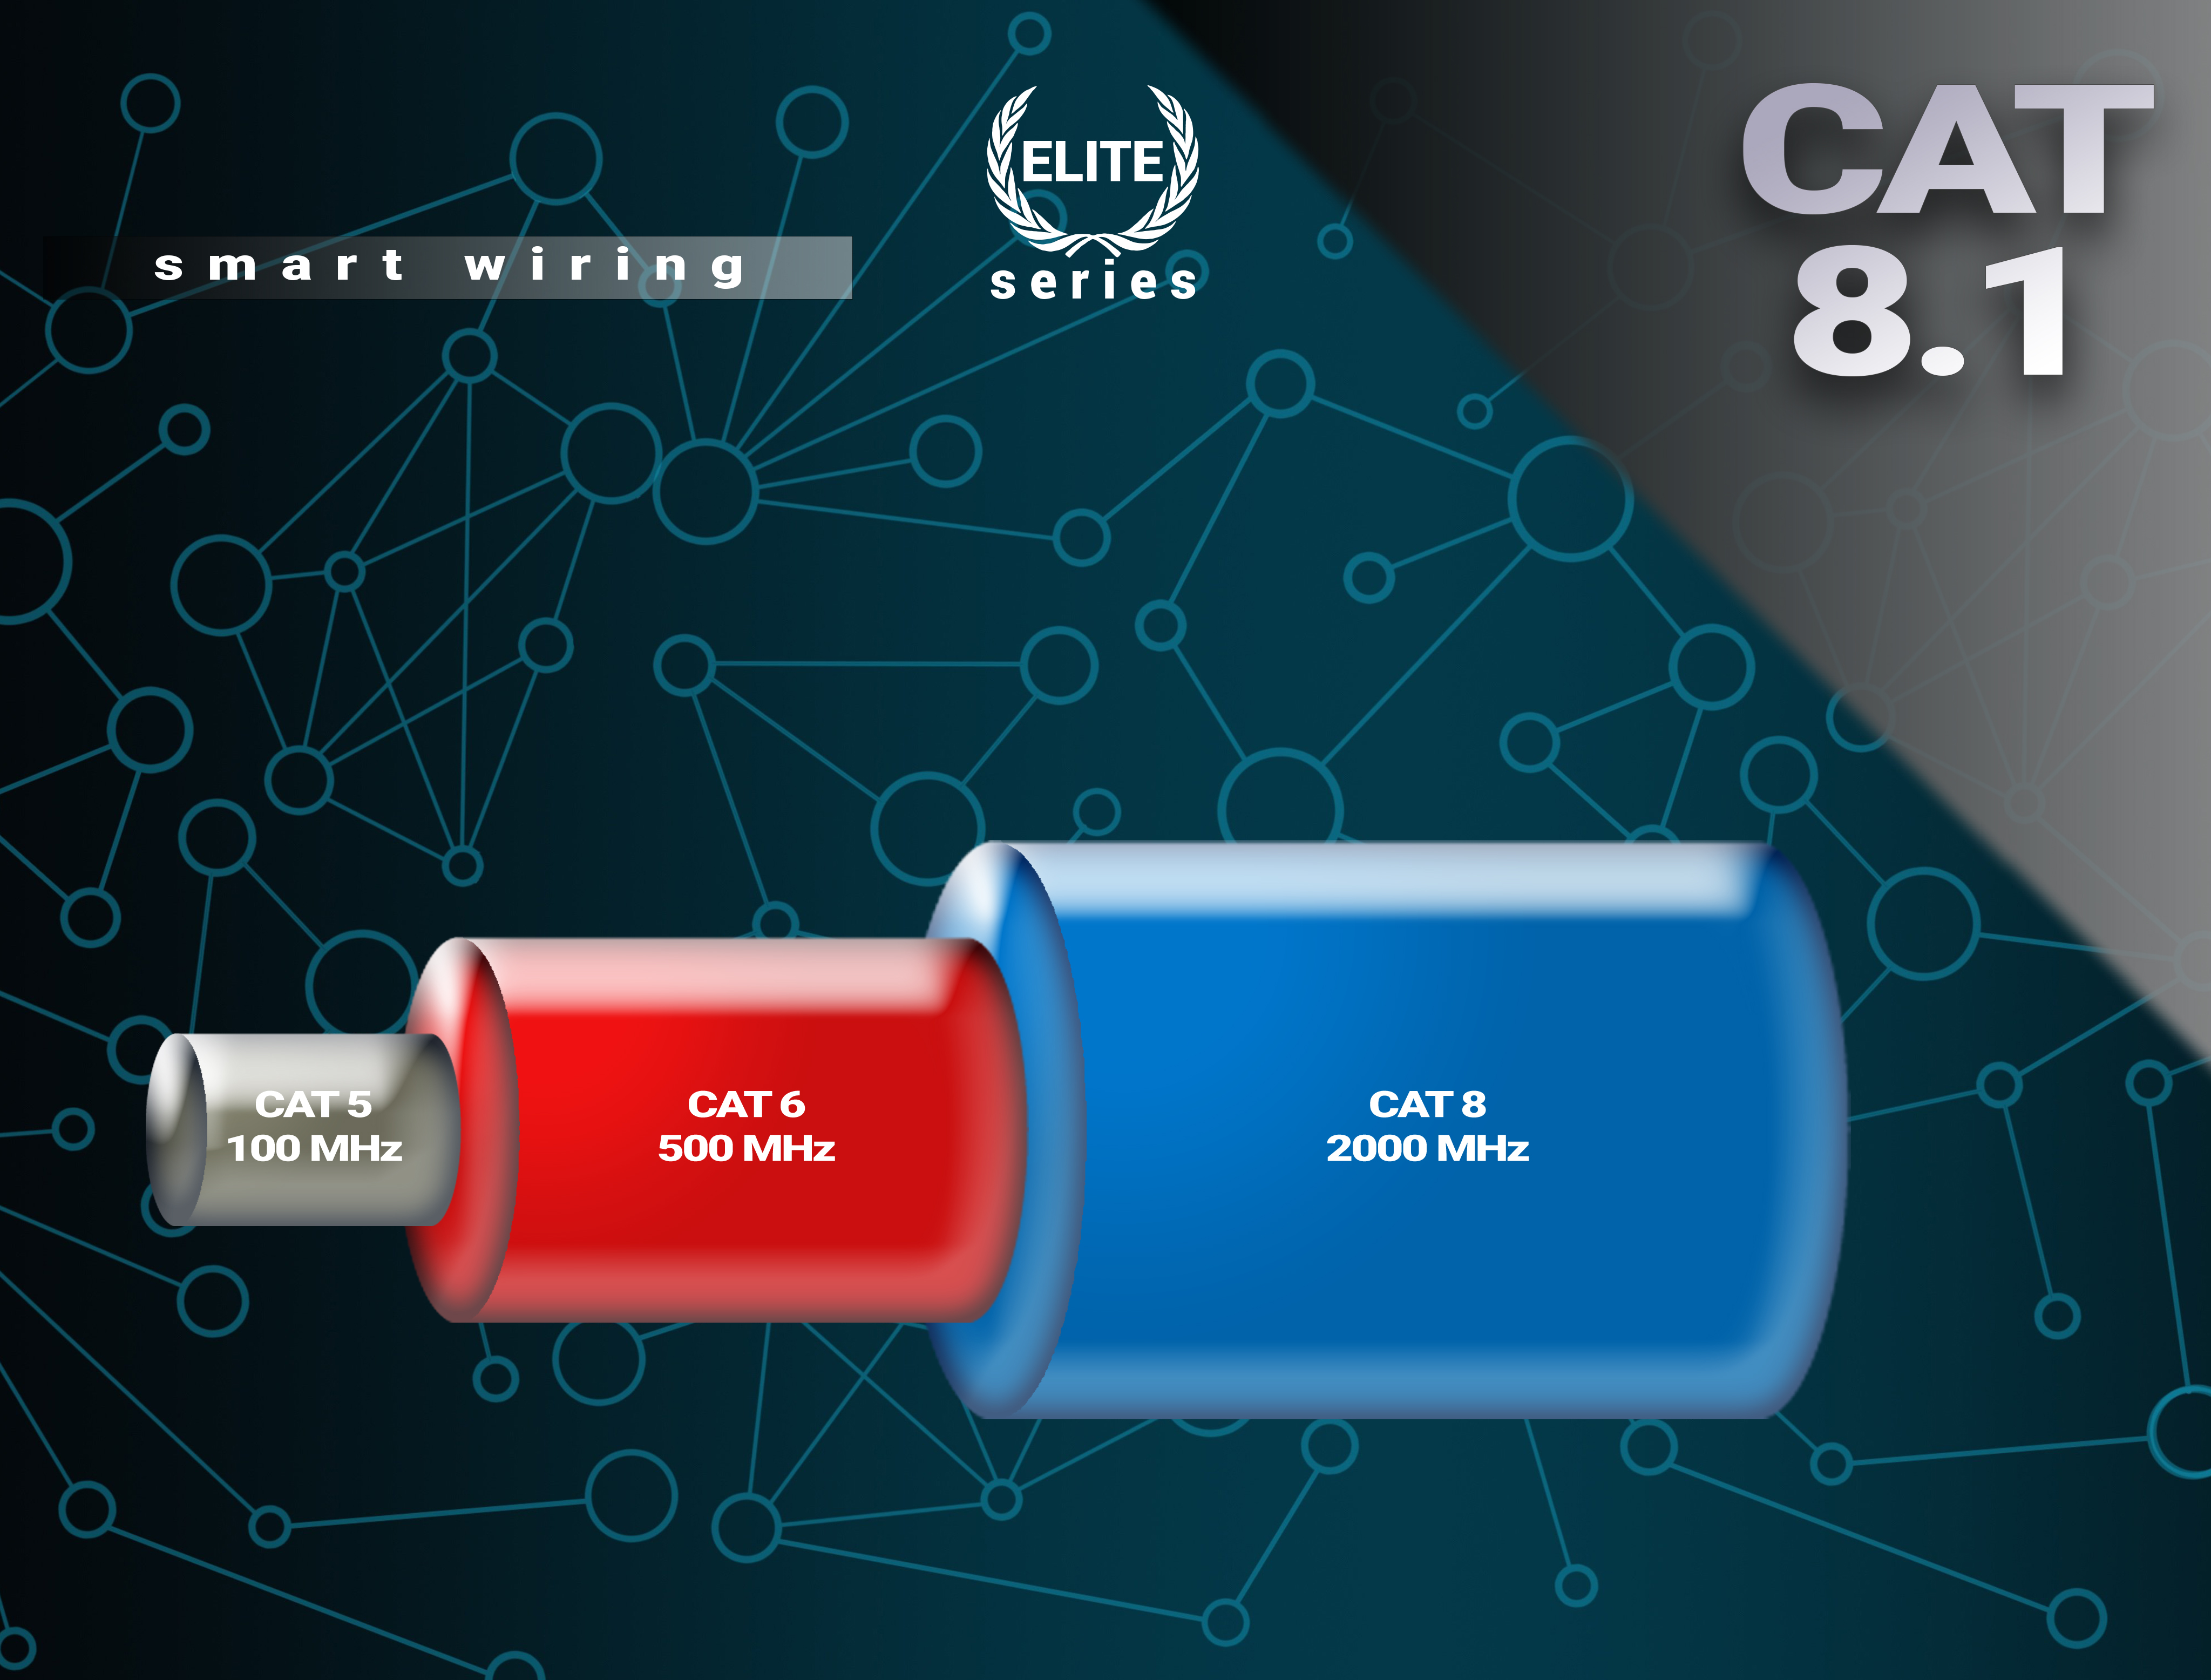 BIVANI Premium 40 - Kabel CAT 8.1 LAN Elite-Series, Gbps 7,5 m Netzwerkkabel